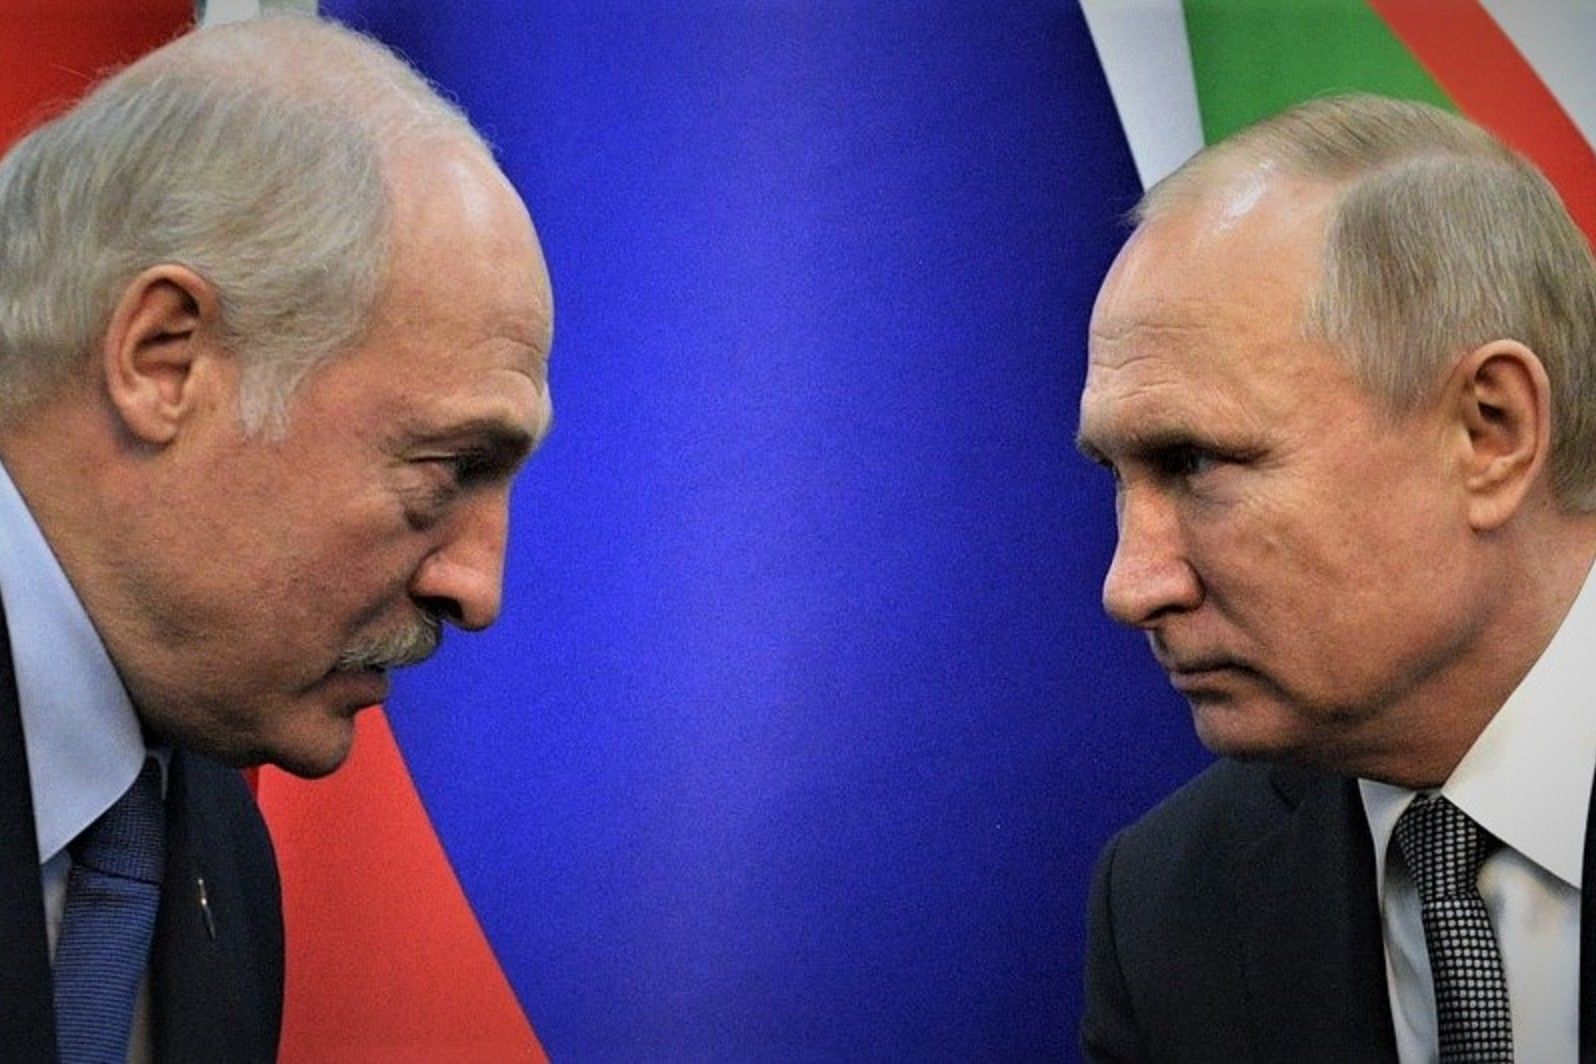 "Вероятность вступления Беларуси в войну резко выросла", - Гармаш бьет тревогу